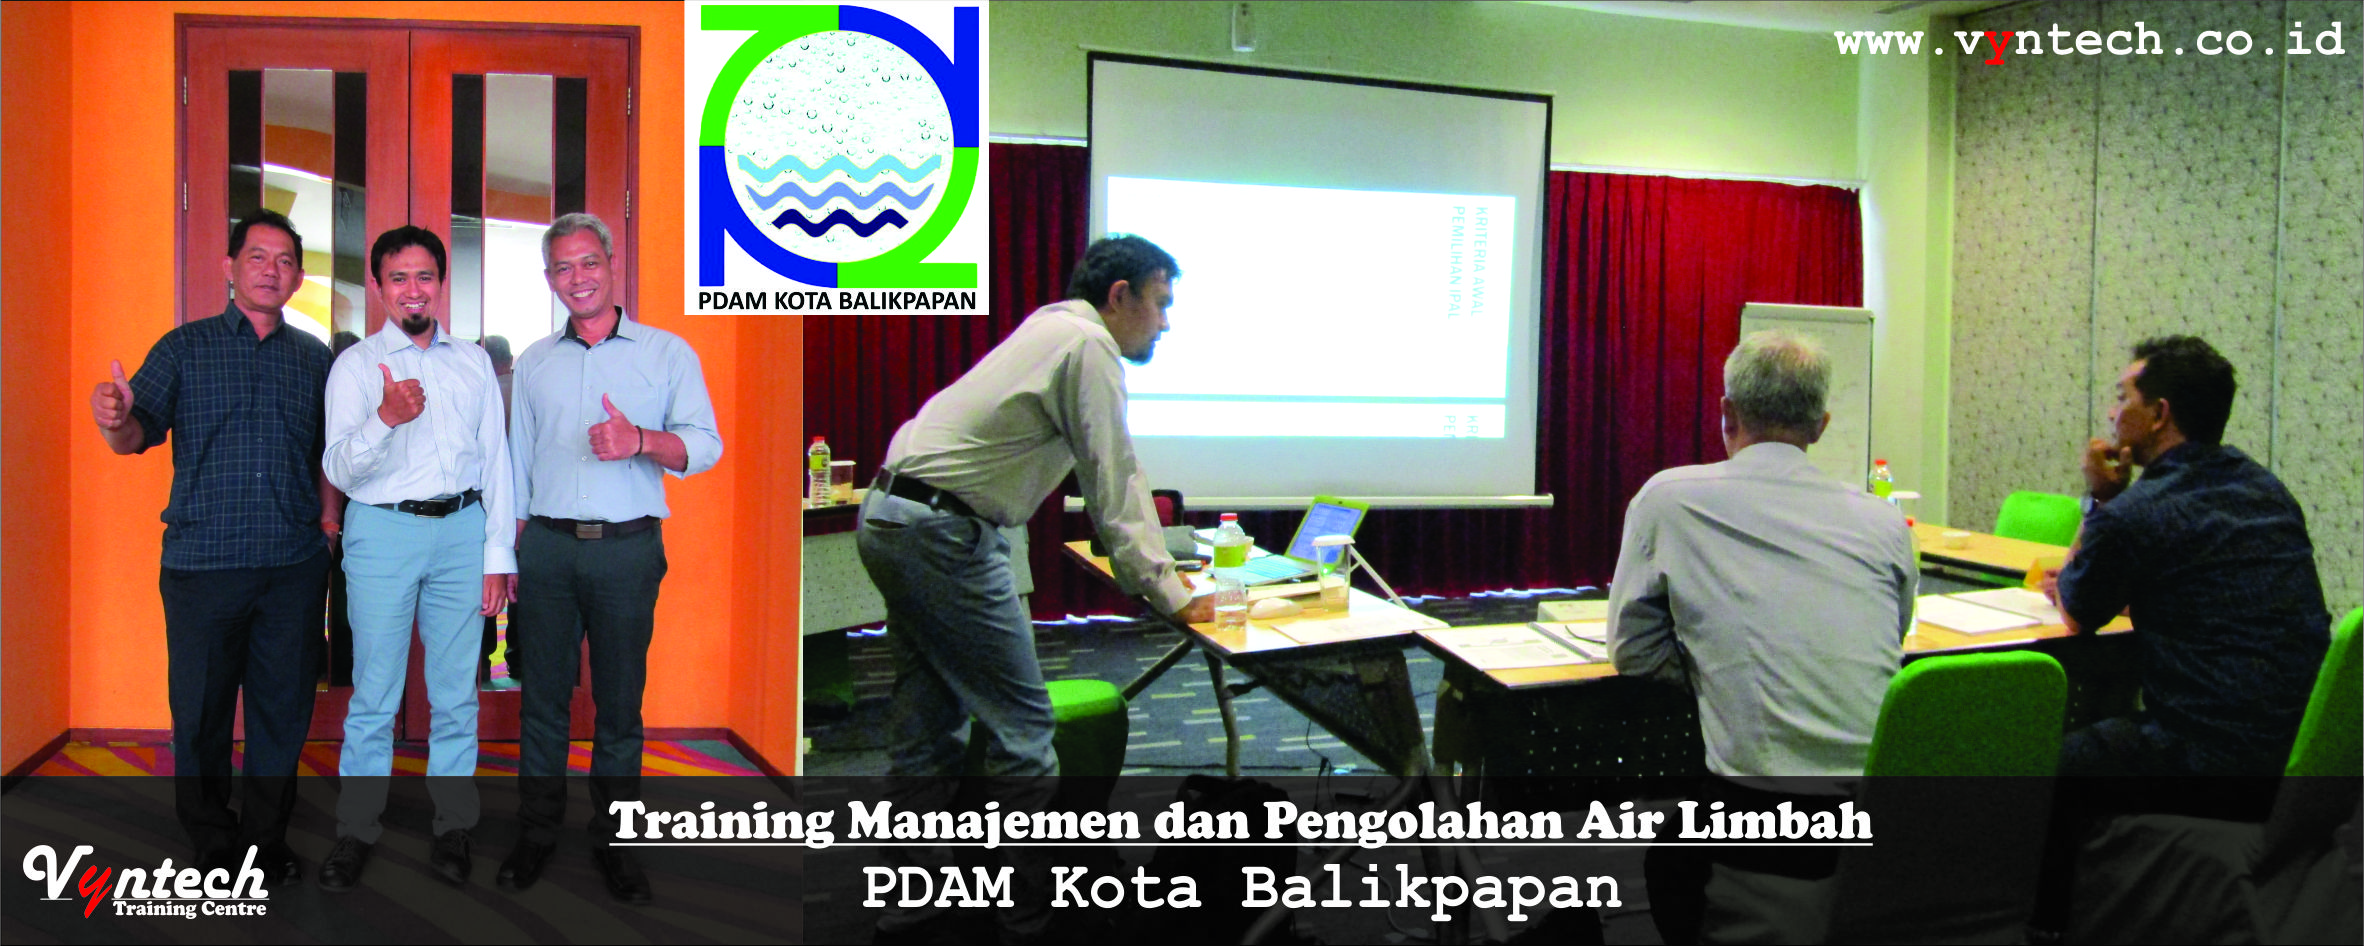 20180410 Training Manajemen dan Pengolahan Air Limbah - PDAM Kota Balikpapan